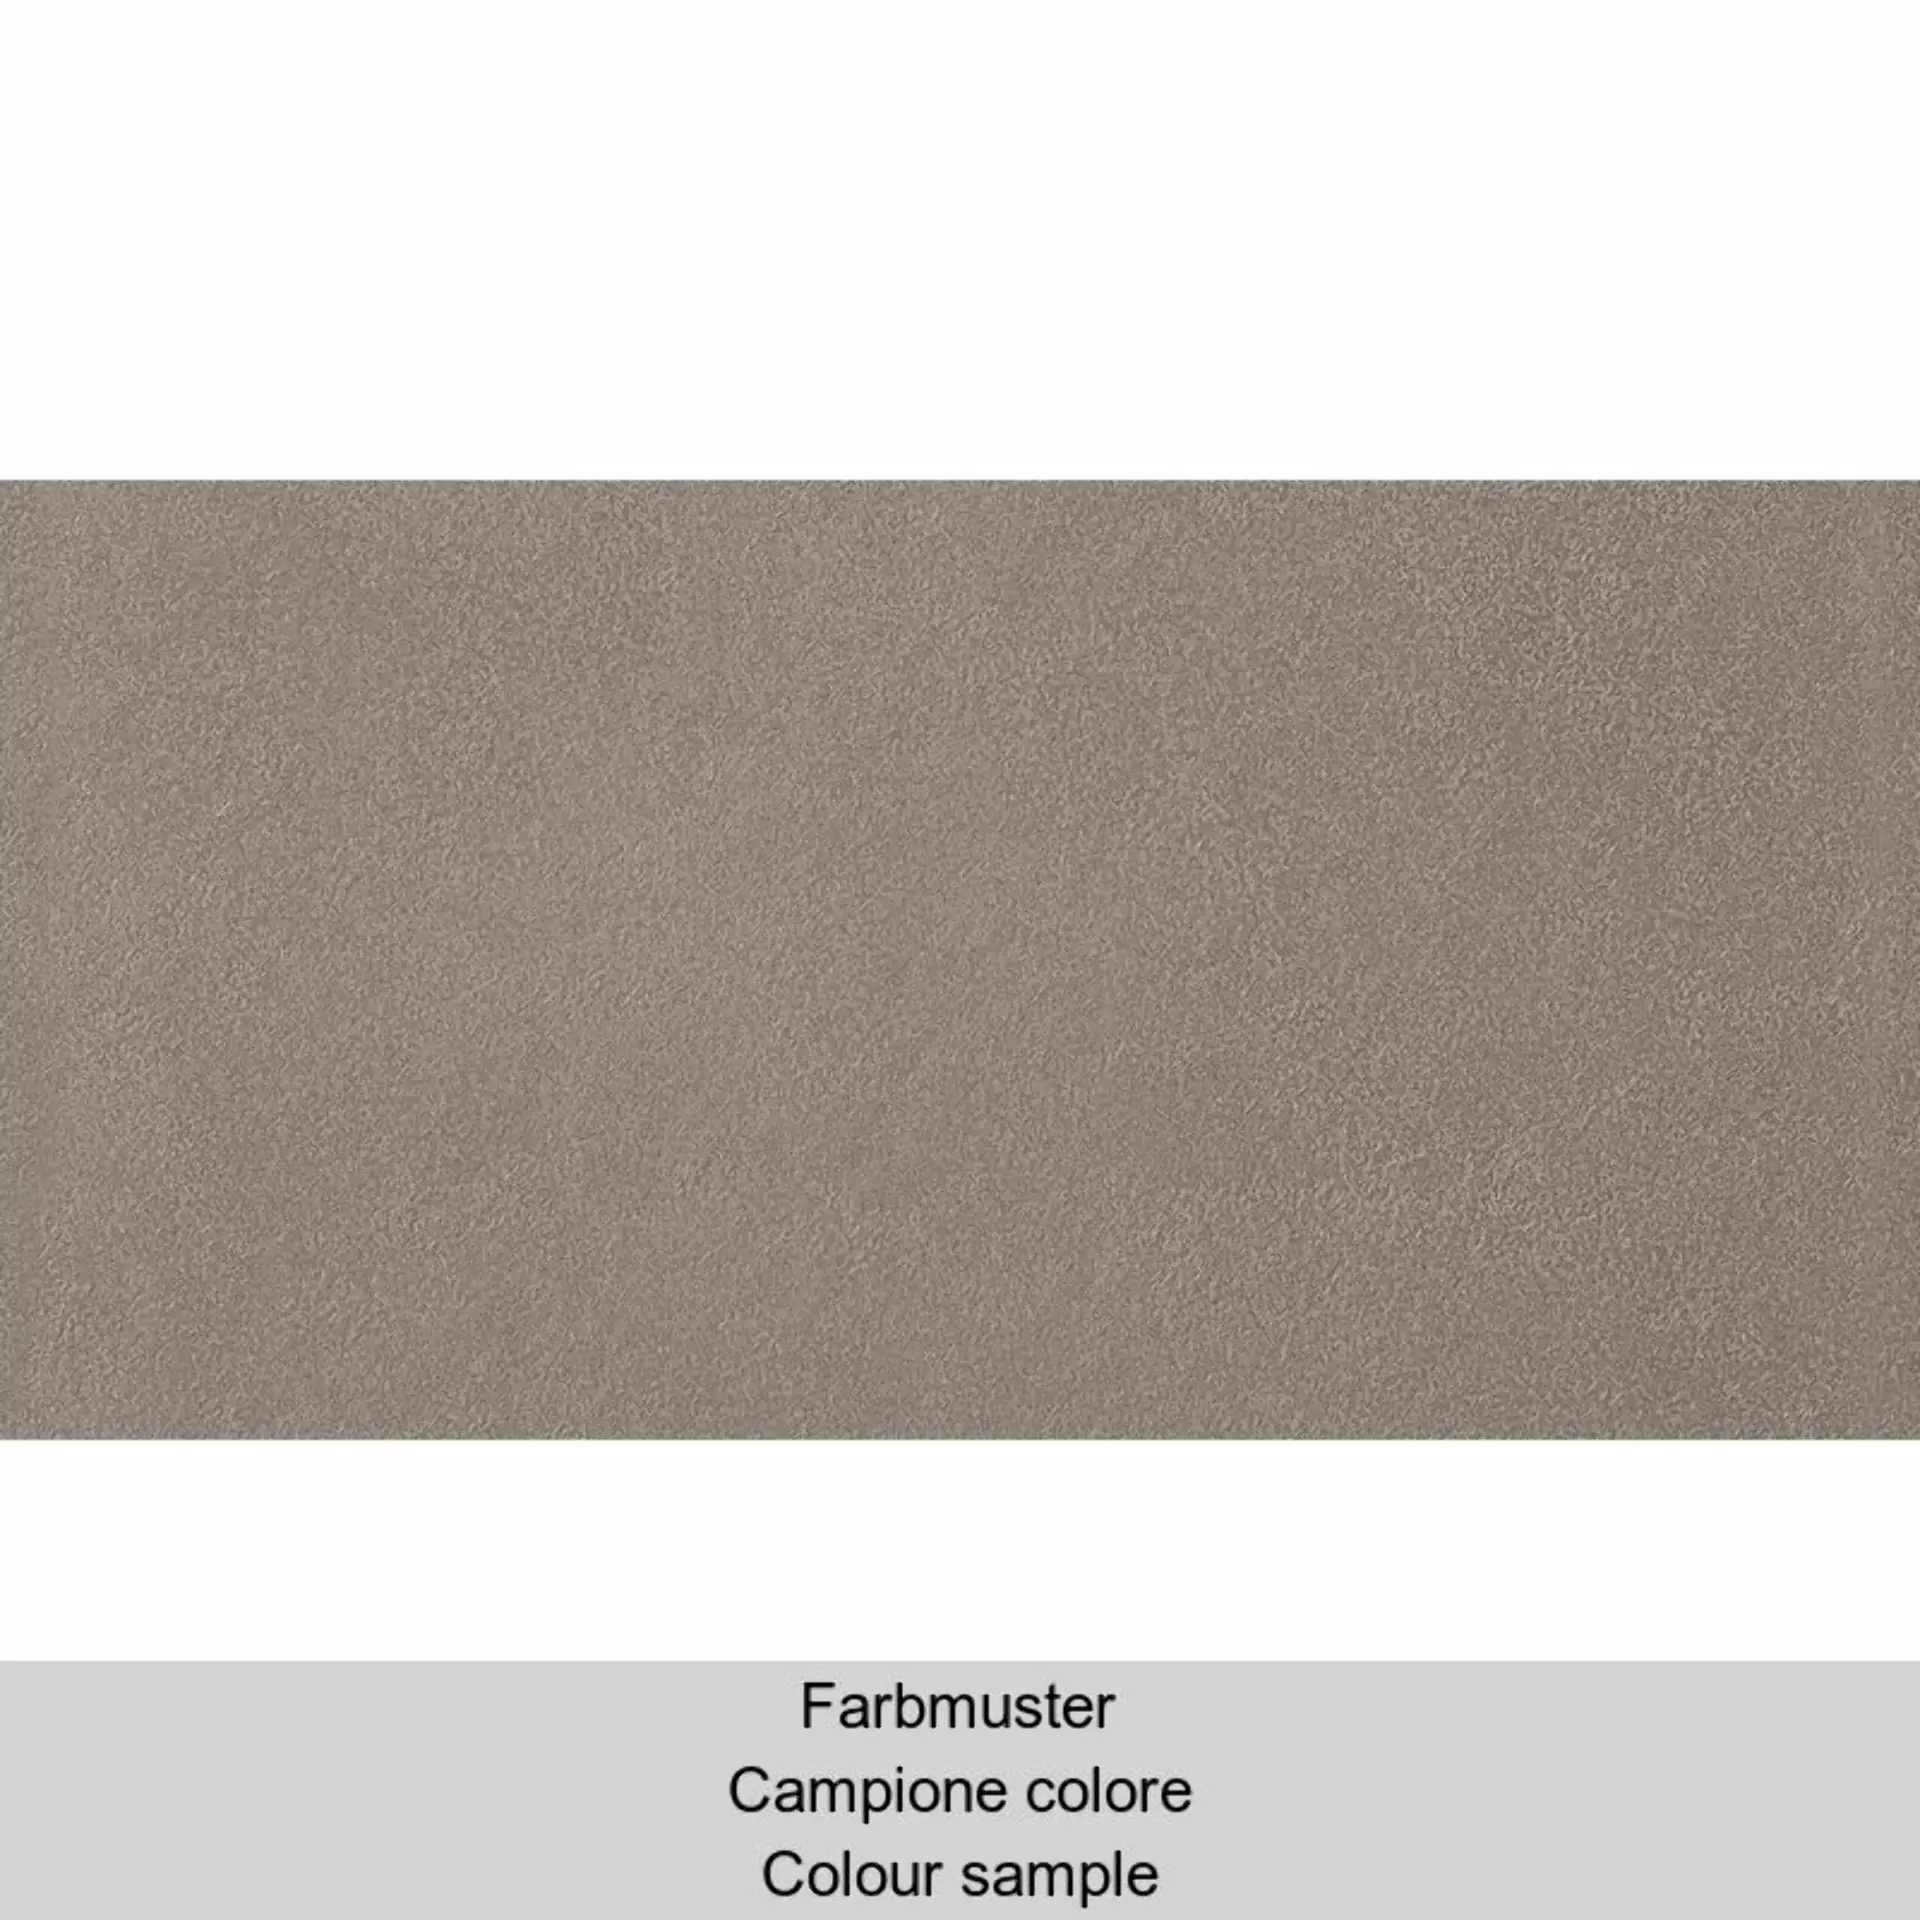 Casalgrande Spazio Tortora Naturale – Matt 3790173 30x60cm rektifiziert 10mm